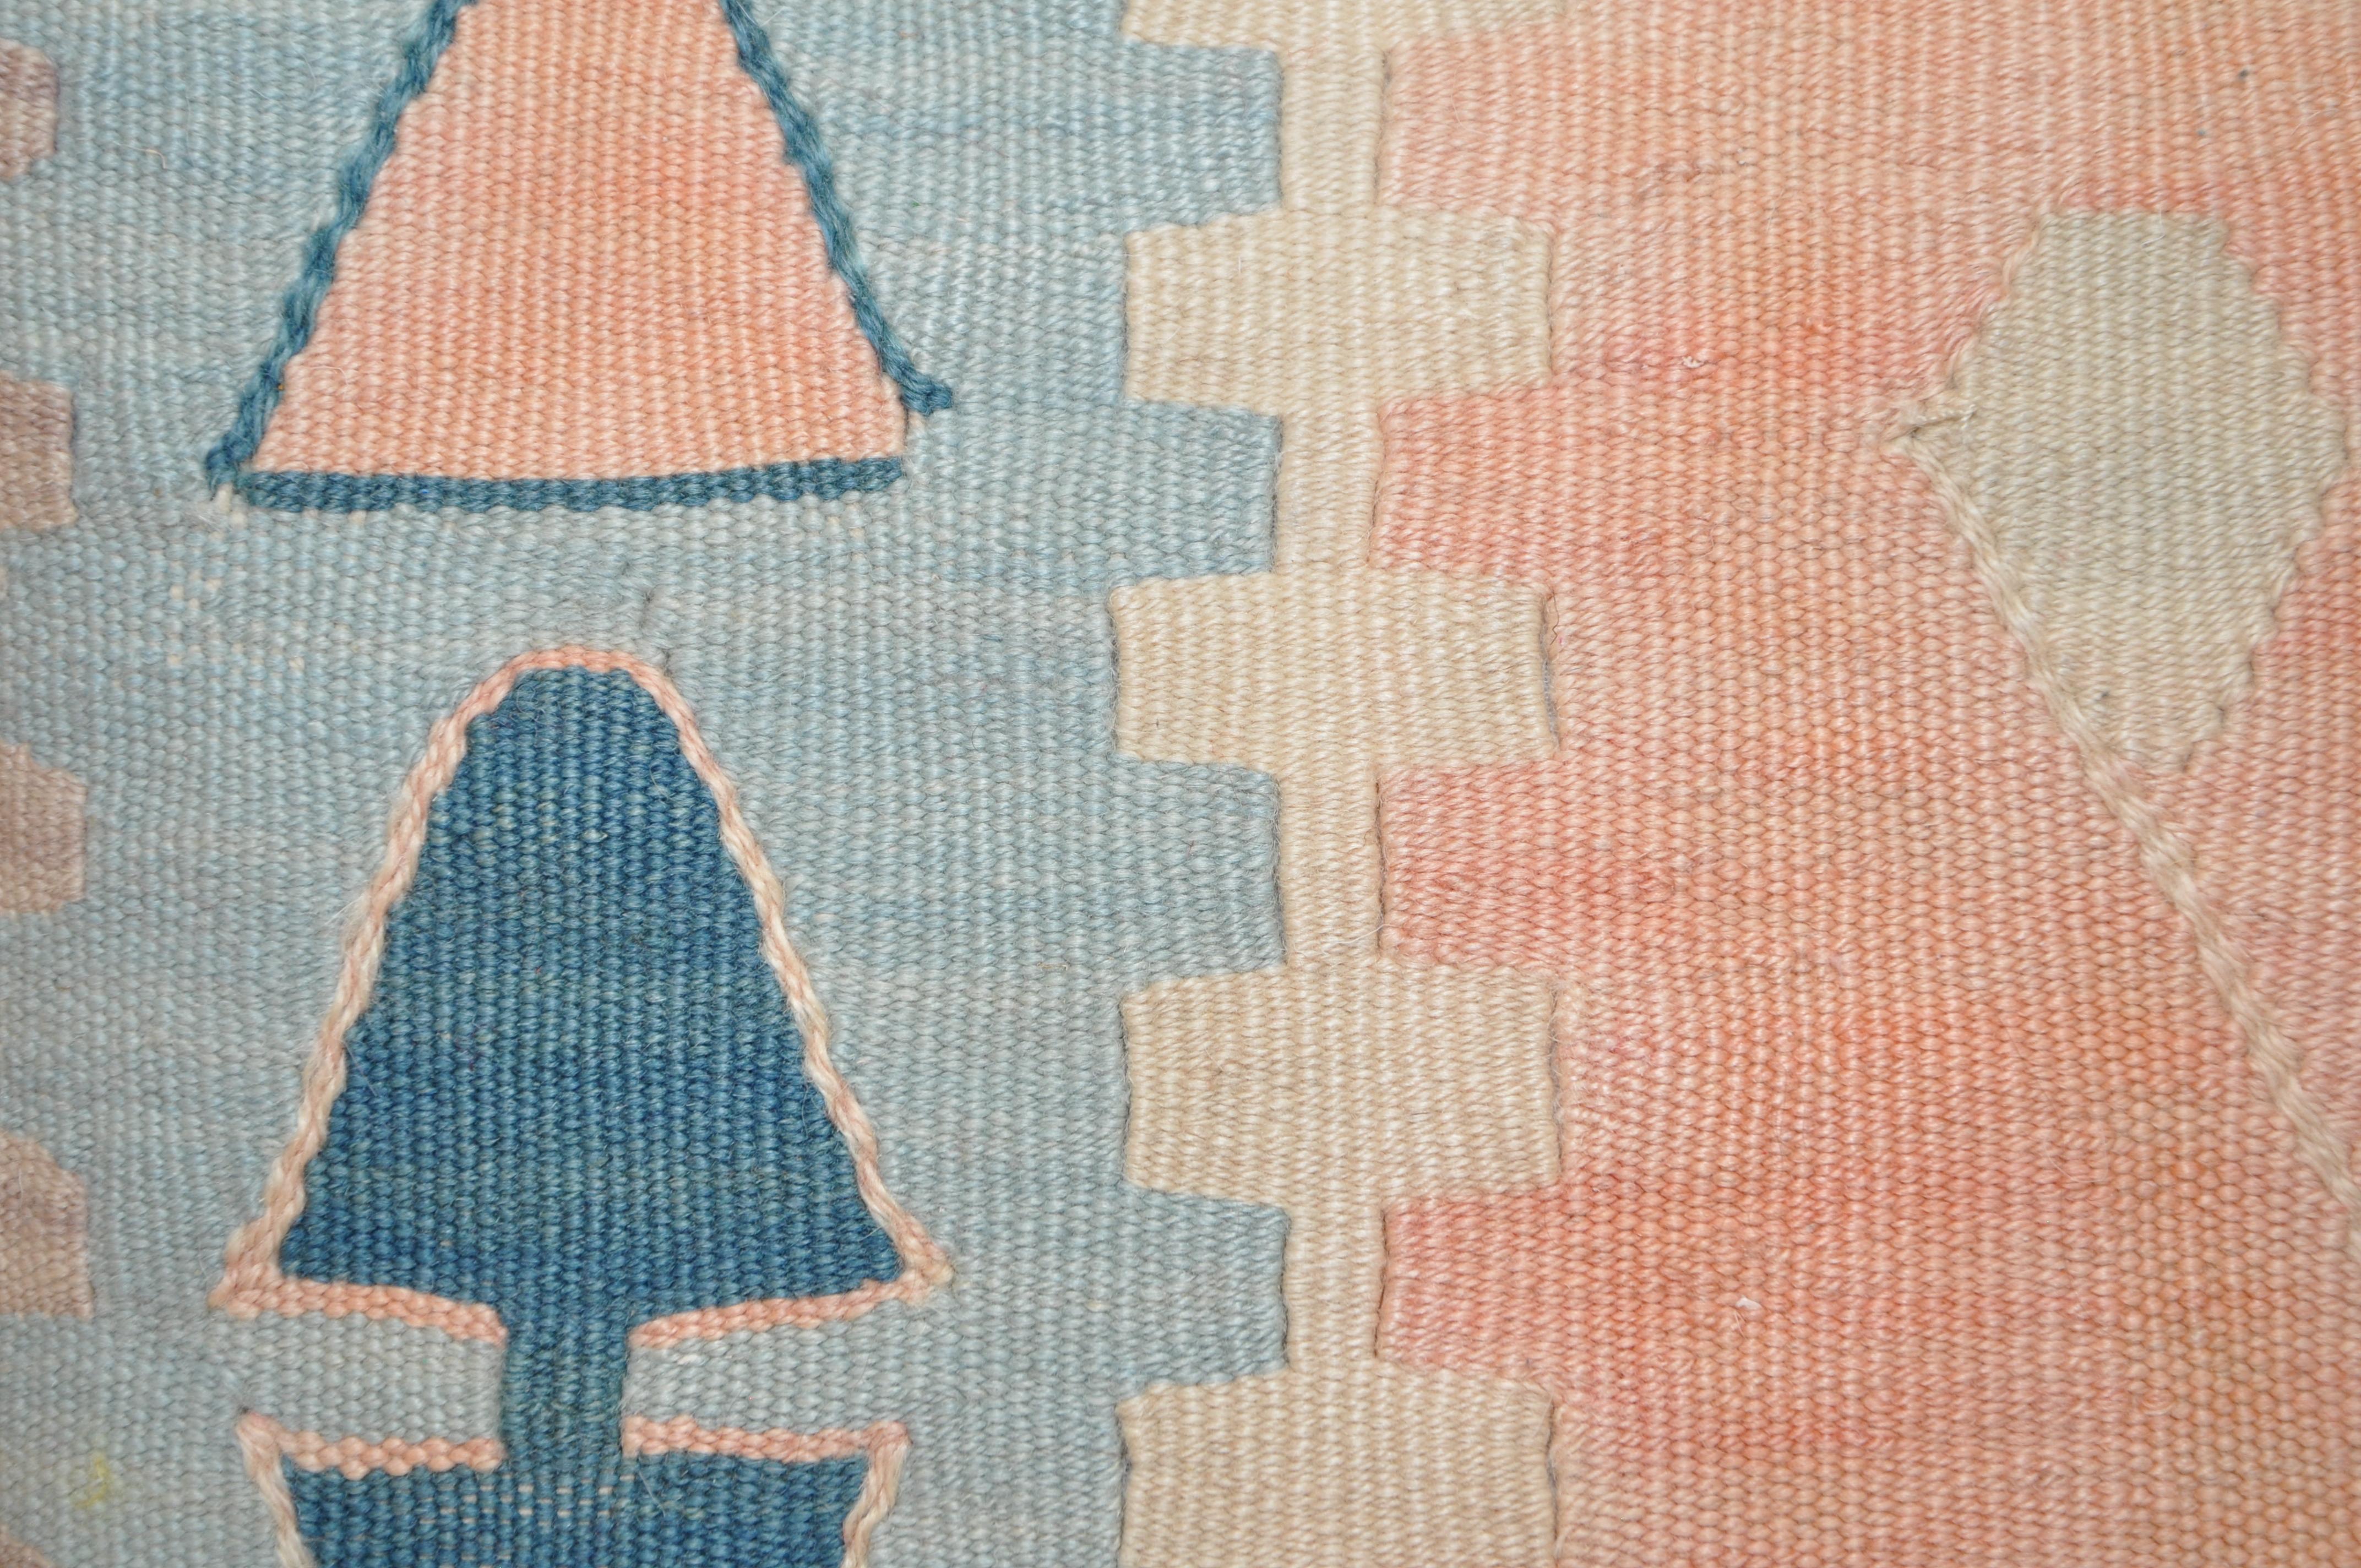 Ein Paar luxuriöser Kissen, die von der irischen Designerin Katie Larmour aus exquisiten Stücken eines Vintage-Kilim-Teppichs in Kombination mit irischem Leinen hergestellt wurden. Einzigartig und unverwechselbar. 

Wunderschöne geometrische Formen